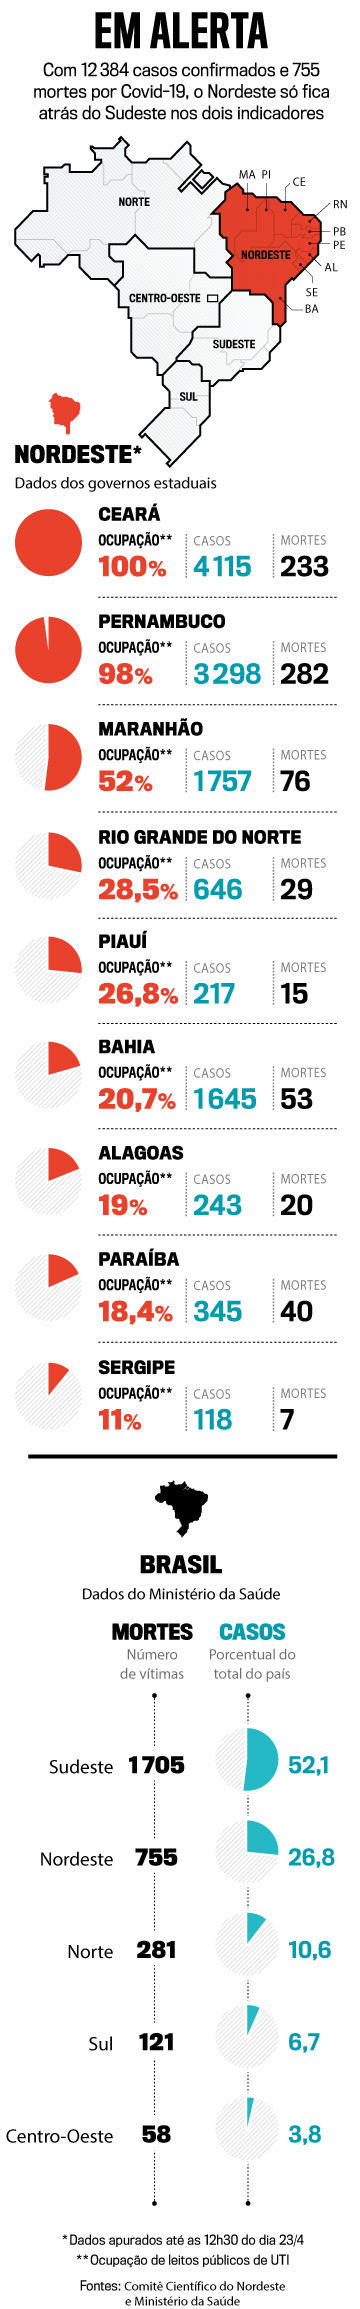 Imagem com informações em alerta do covid por estado brasileiro